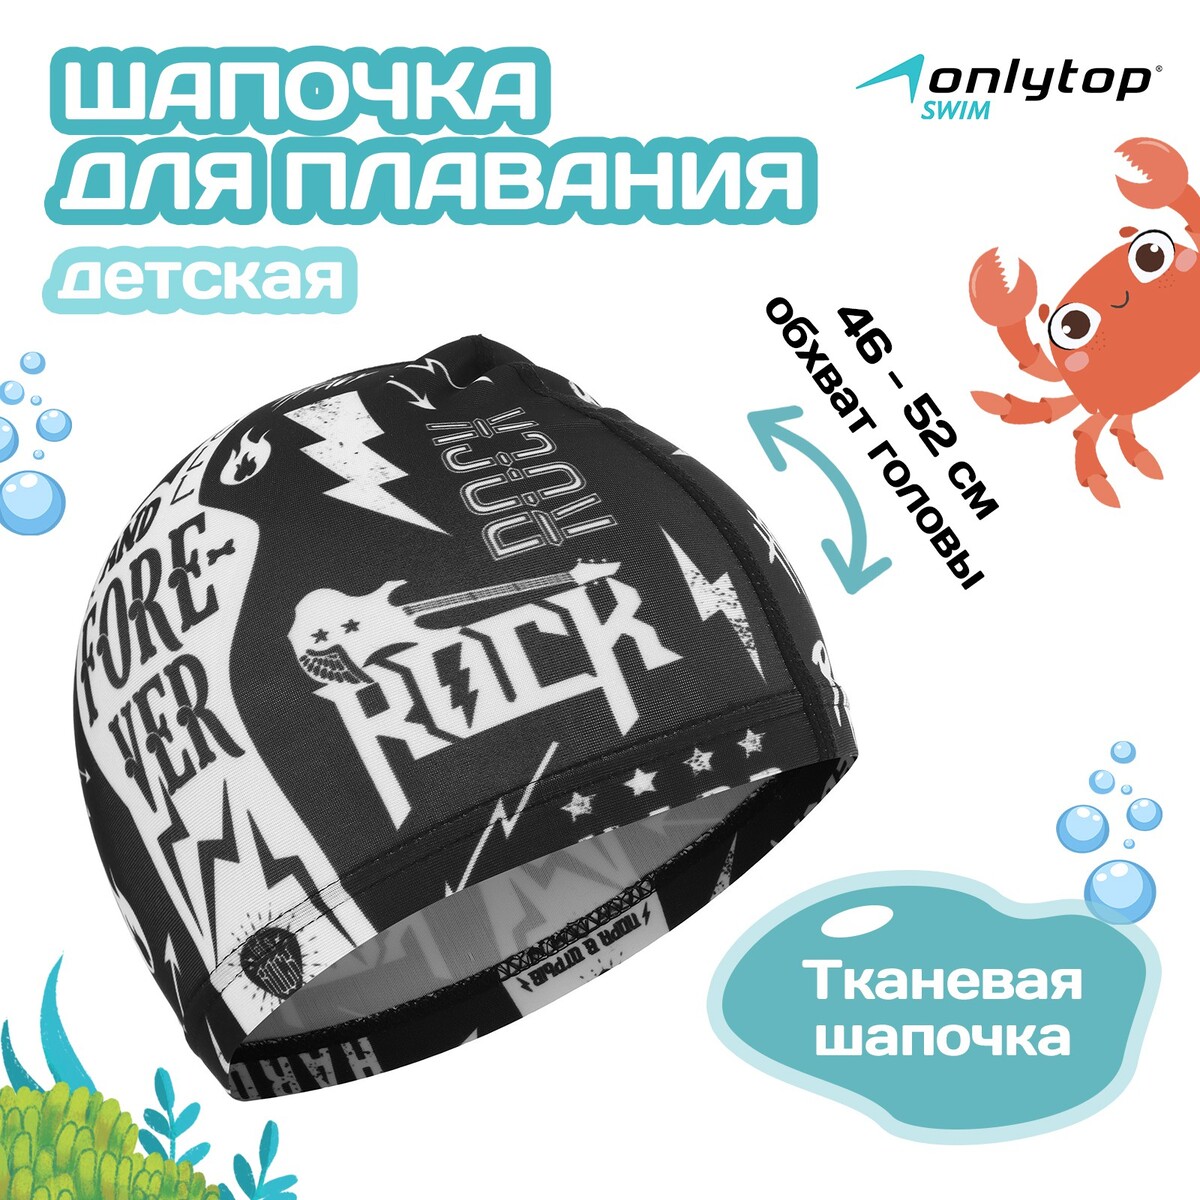 Шапочка для плавания детская rock and roll, тканевая, обхват 46-52 см шапочка для плавания atemi сс101 тканевая с силиконовым покрытием чёрная